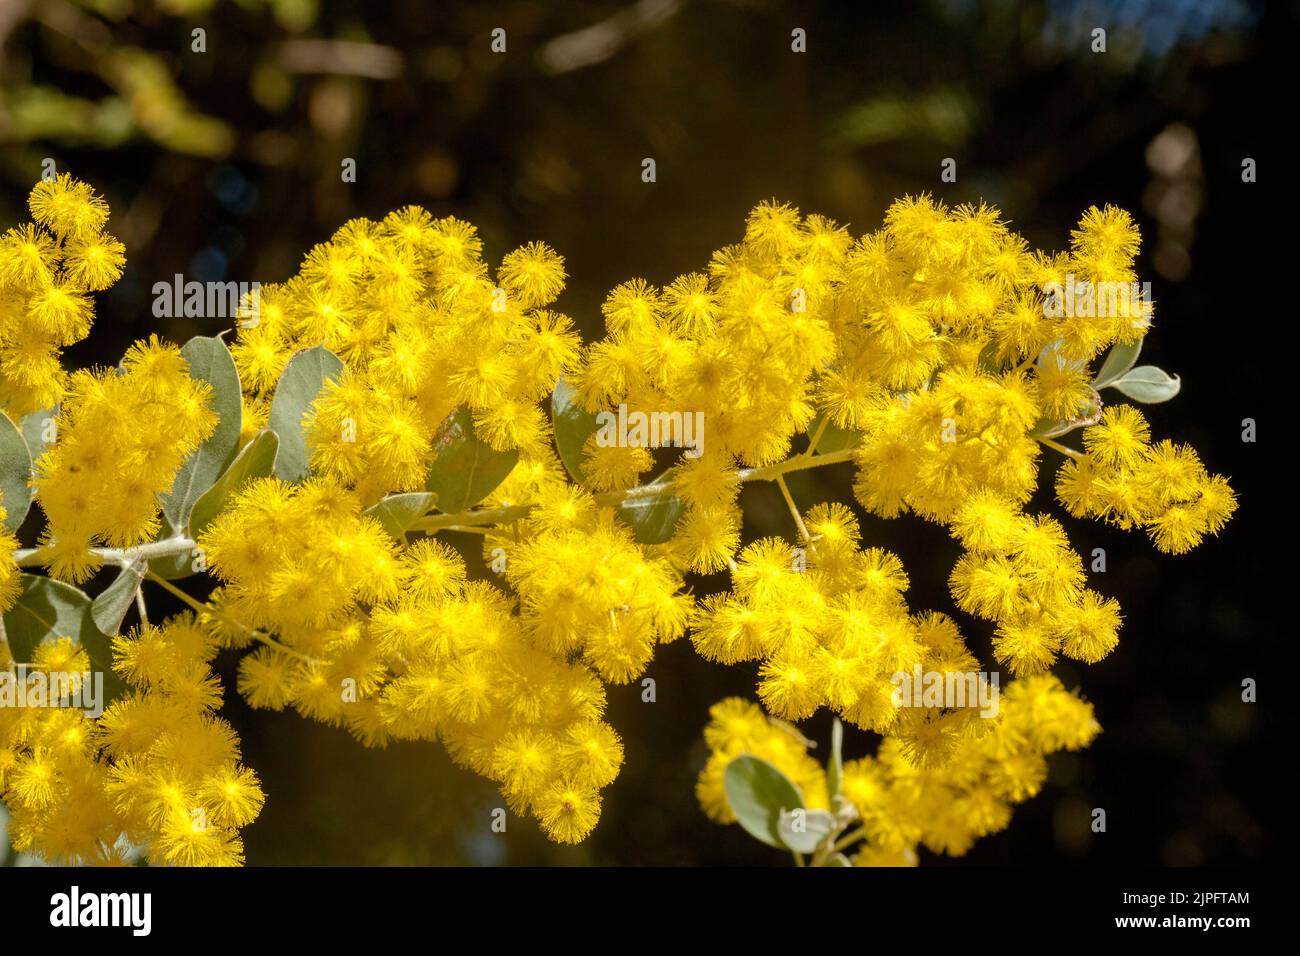 Massa di splendidi fiori profumati di giallo dorato di Acacia podalyriifolia, Queensland Silver Wattle / Mount Morgan Wattle, emblema floreale australiano Foto Stock